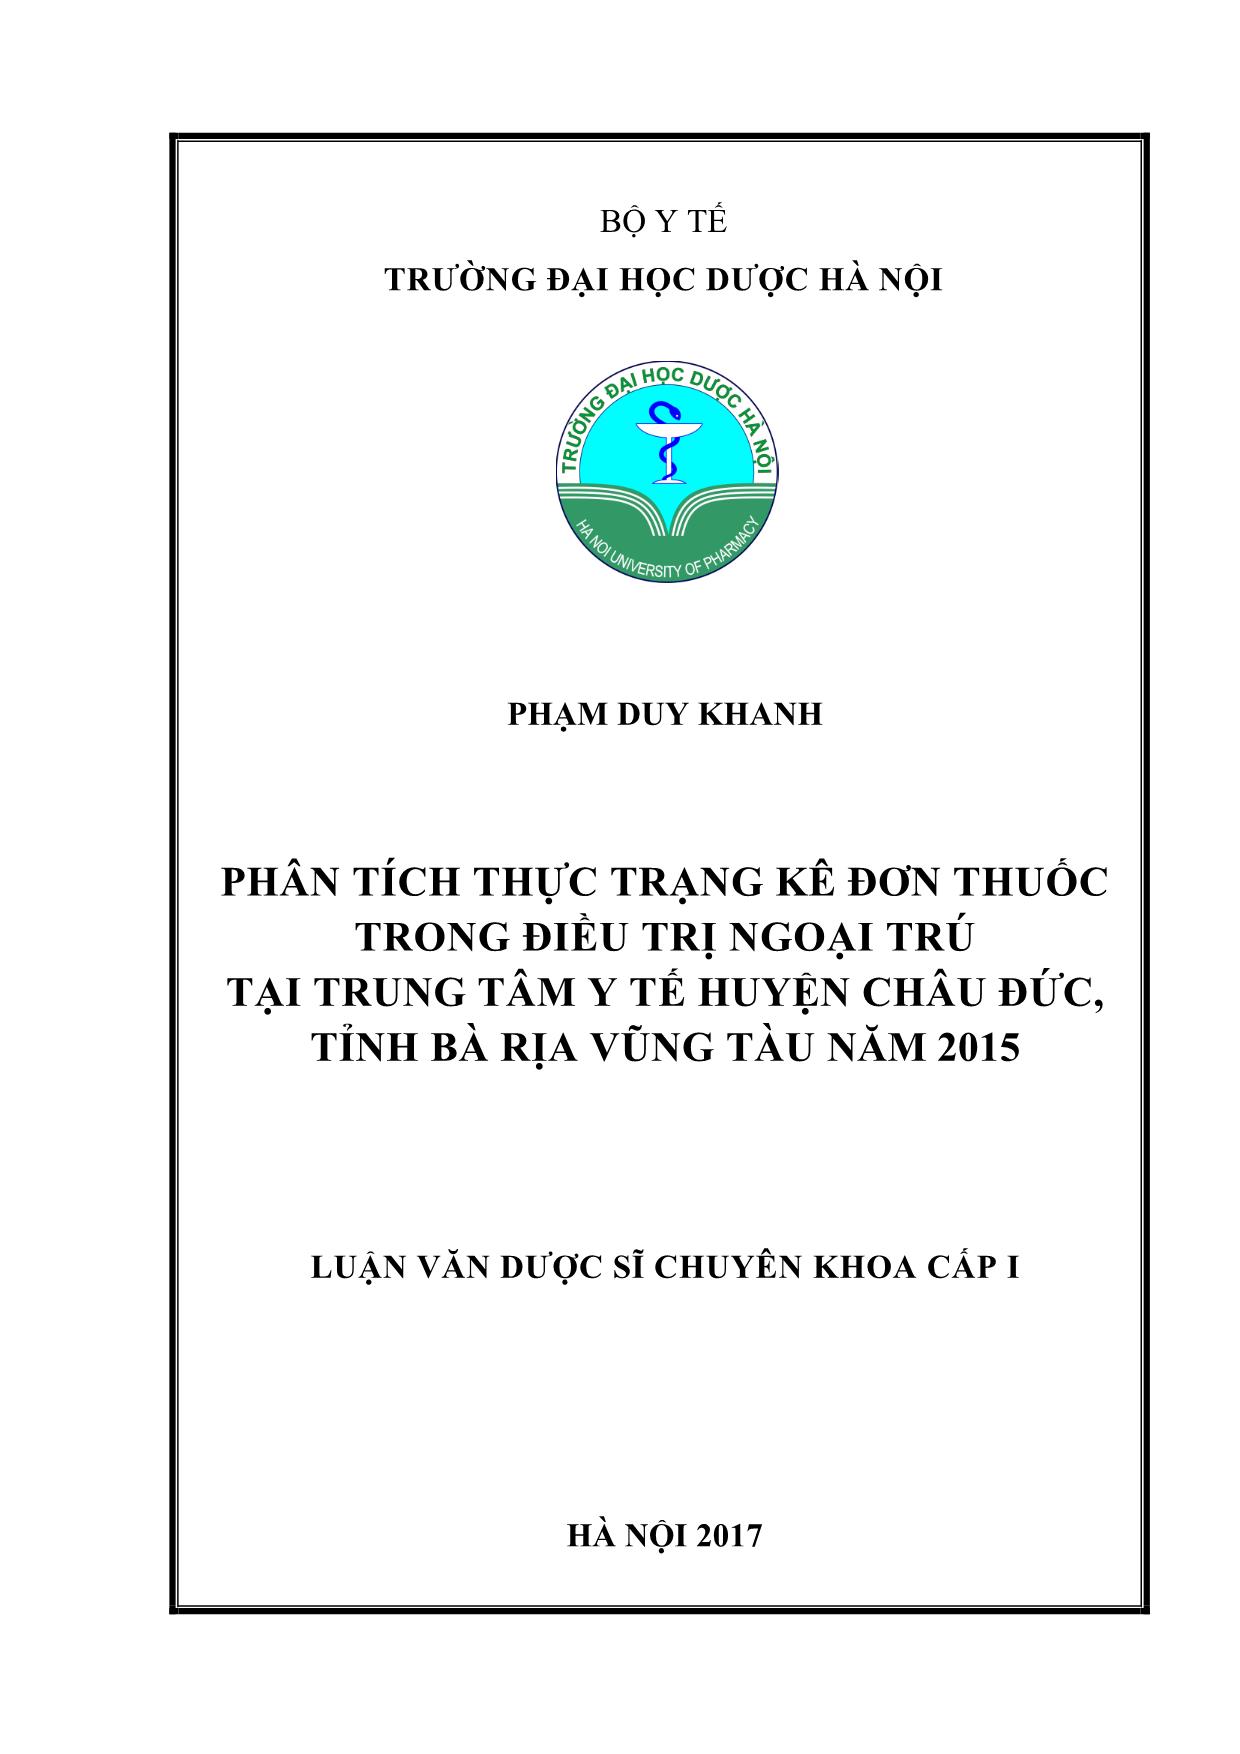 Luận văn Phân tích thực trạng kê đơn thuốc trong điều trị ngoại trú tại trung tâm y tế huyện Châu Đức, tỉnh Bà Rịa Vũng Tàu năm 2015 trang 1